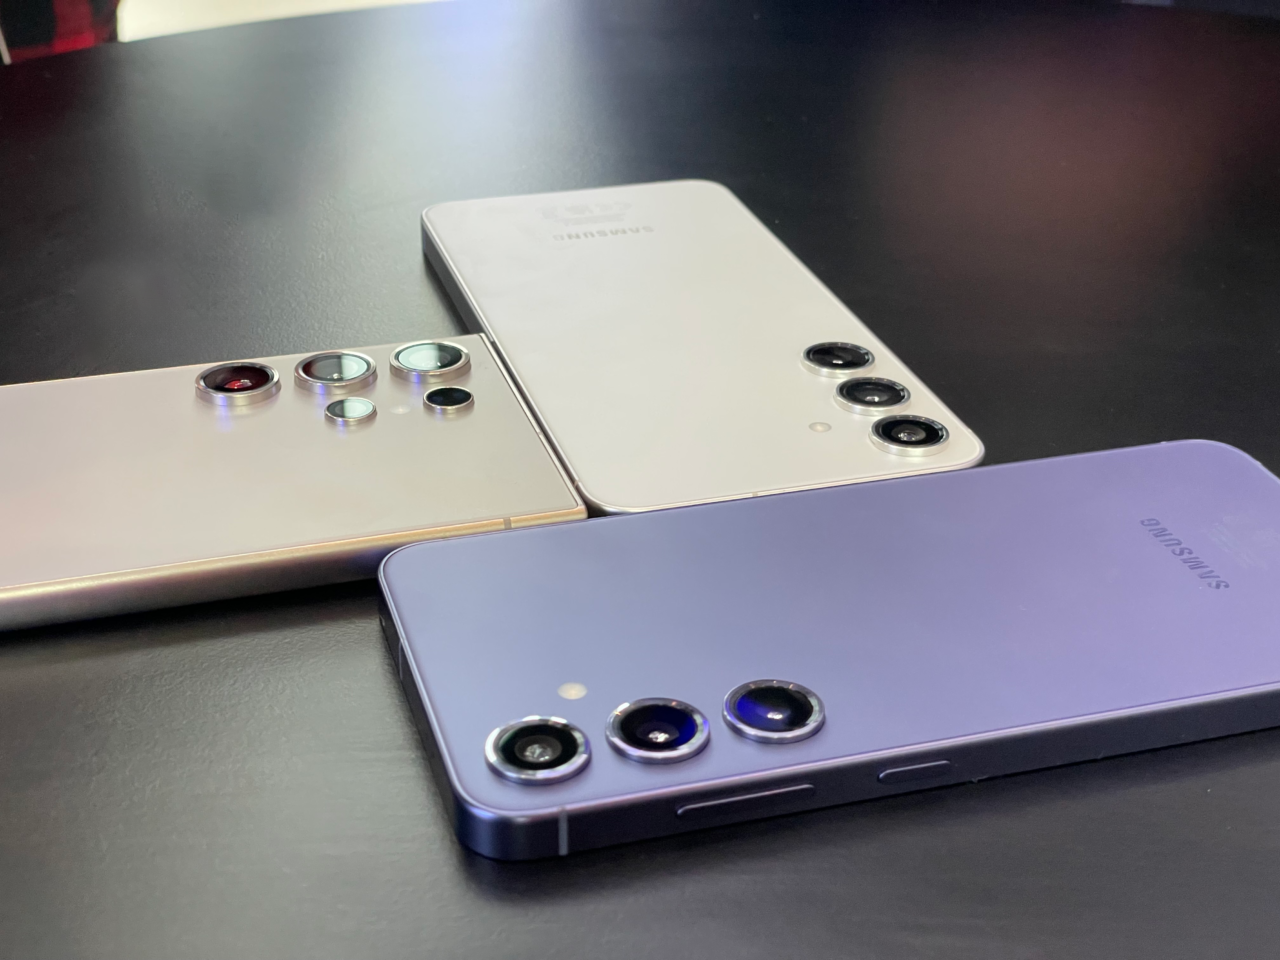 Trzy smartfony Samsung o różnych kolorach i konfiguracjach aparatu umieszczone tyłem na ciemnym biurku.